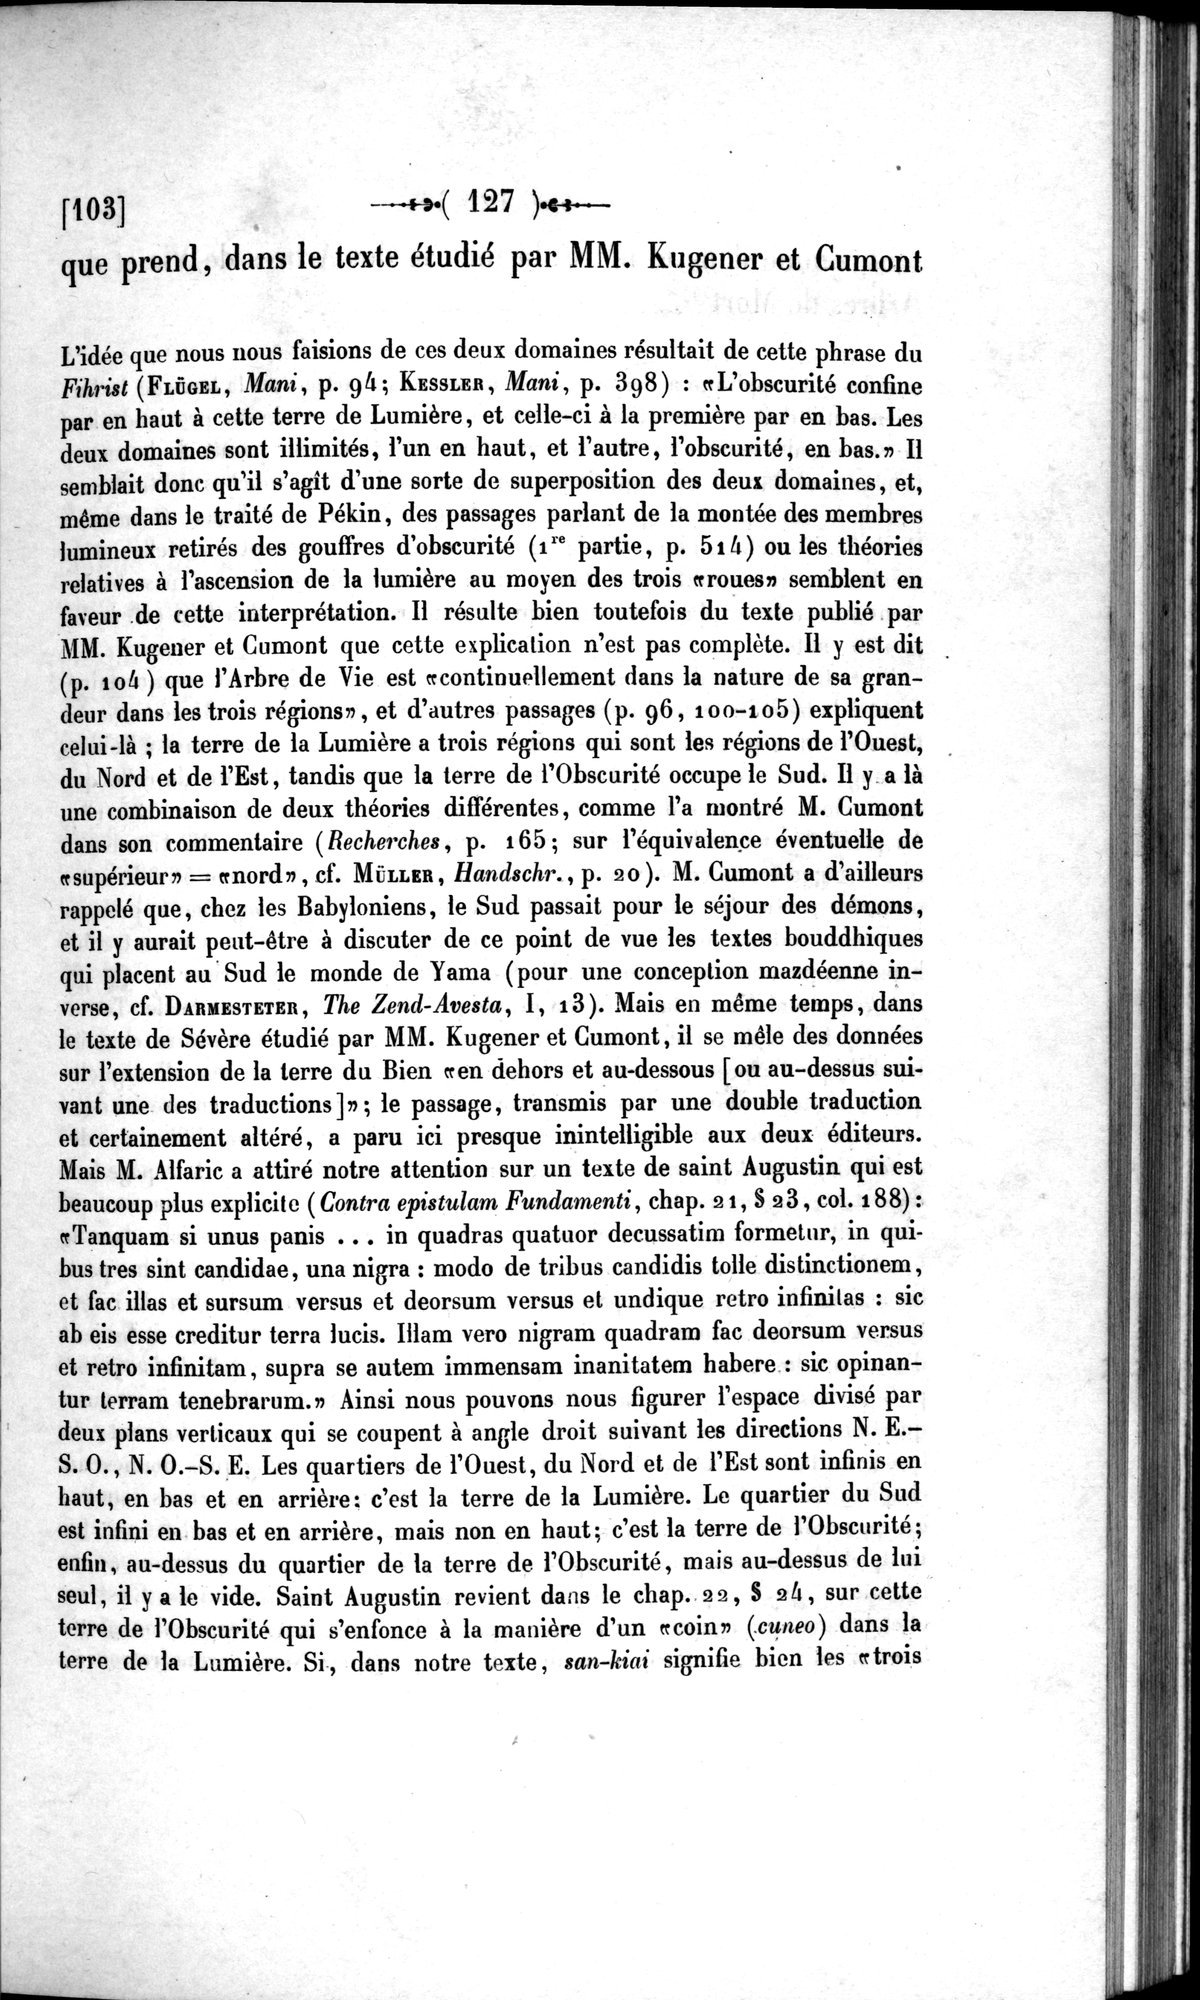 Un traité manichéen retrouvé en Chine : vol.1 / Page 137 (Grayscale High Resolution Image)